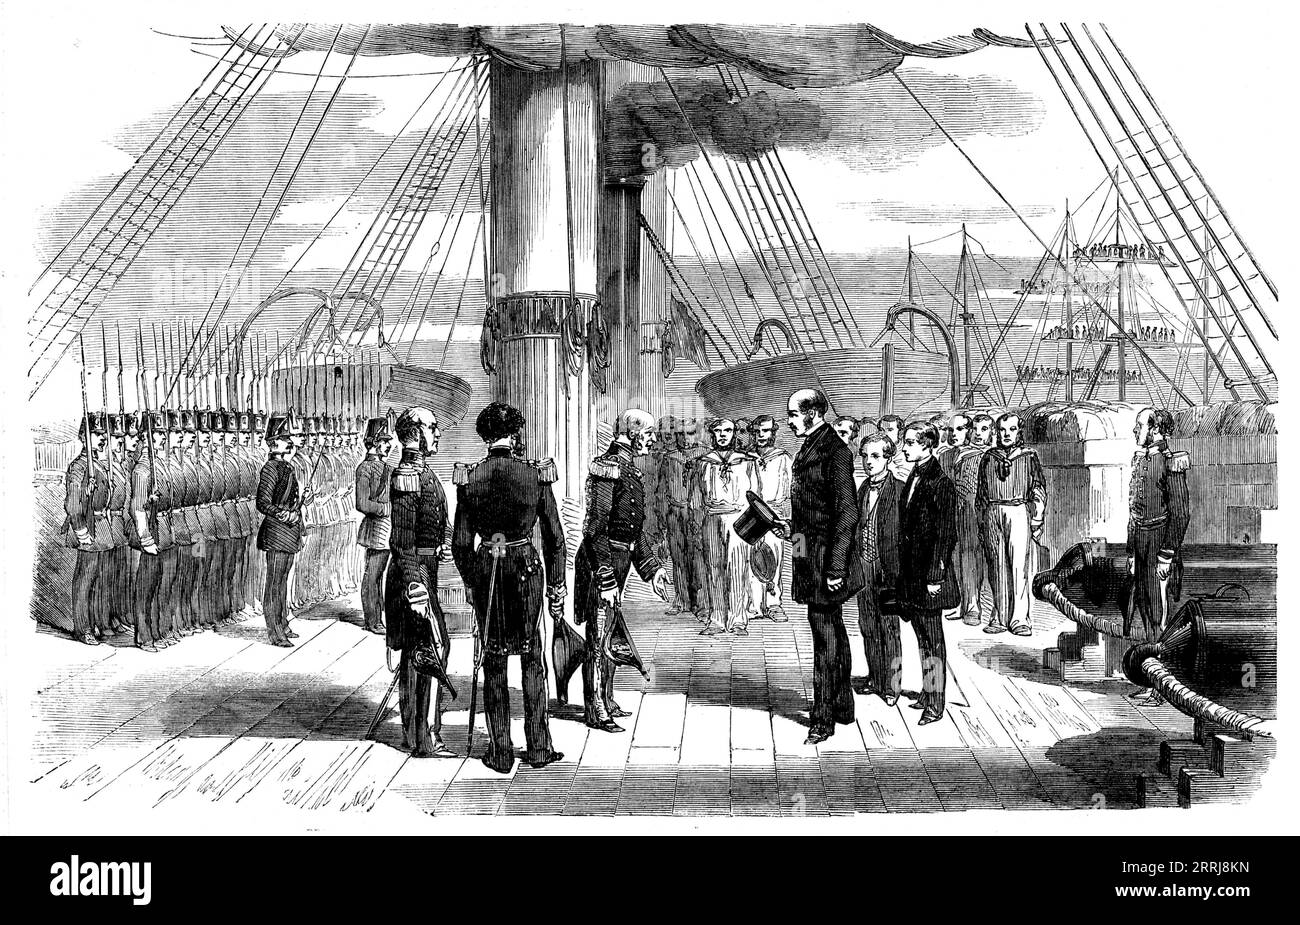 L'embarquement du Prince Alfred à bord du "Euryalus" mercredi - d'après un croquis de V. Jones, 1858. Le cadet Alfred, accompagné de son père le Prince Albert, est introduit au service de la Royal Navy et fait son premier voyage en mer. En approchant de l'Euryalus, ce navire mangeait des chantiers, tout comme l'escadron hollandais du contre-amiral t'Hooft, et un grand salut général suivit. Le prince Albert et le prince Alfred ont été reçus par le capitaine Tarleton et l'état-major du navire avec tous les honneurs dus à la royauté, et reçus par lui lors d'un déjeuner dans la cabane de l'État... le jeune prince Banque D'Images